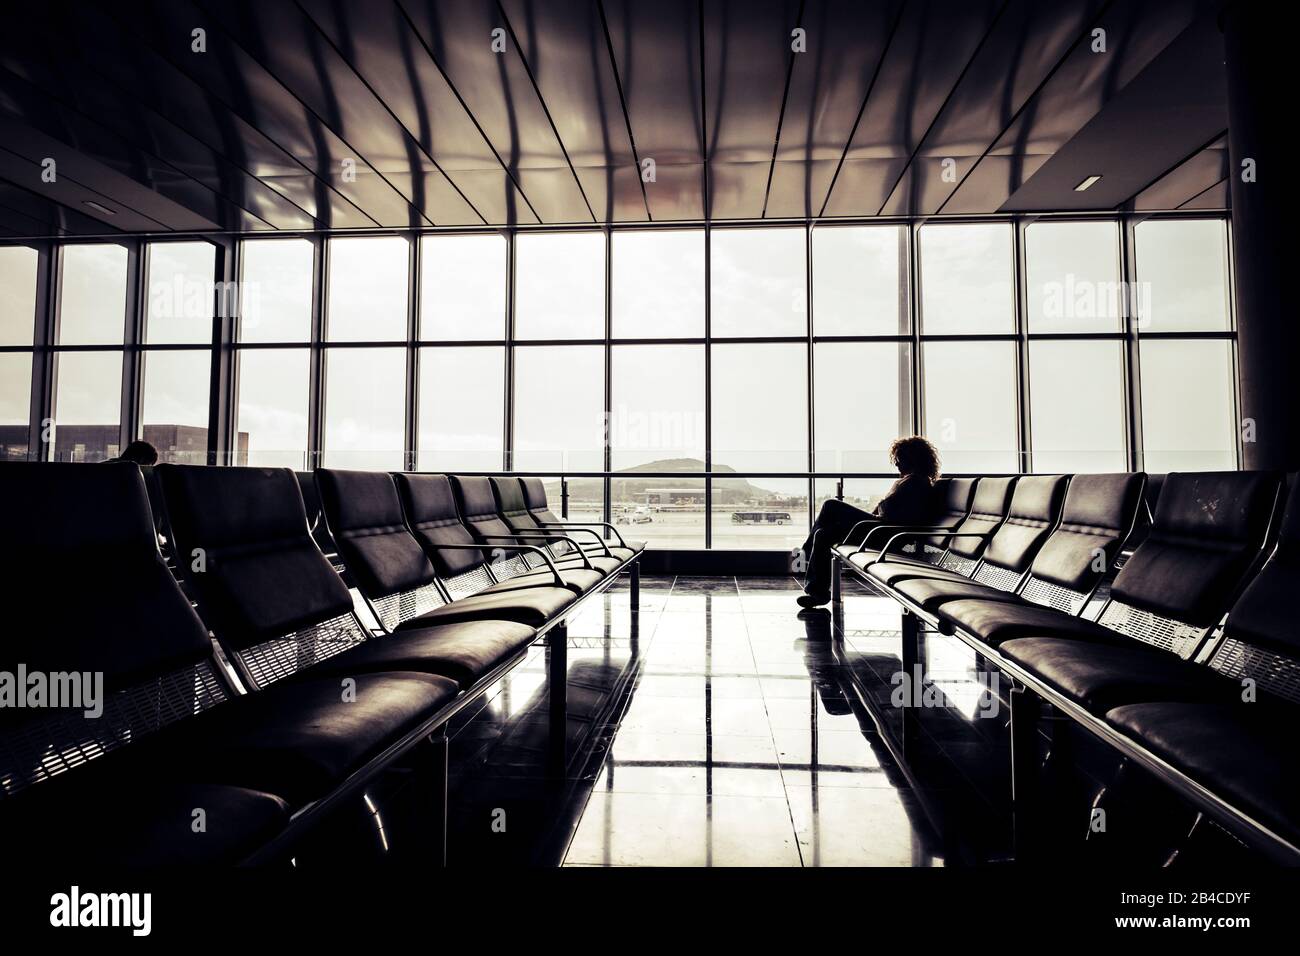 Annullare il volo di ritardo al concetto di aeroporto con solo viaggiatore in attesa sedersi sui posti a sedere - viaggio e tempo di cancello - stile di vita moderno della gente - viaggiatori solitari nomade digitale Foto Stock